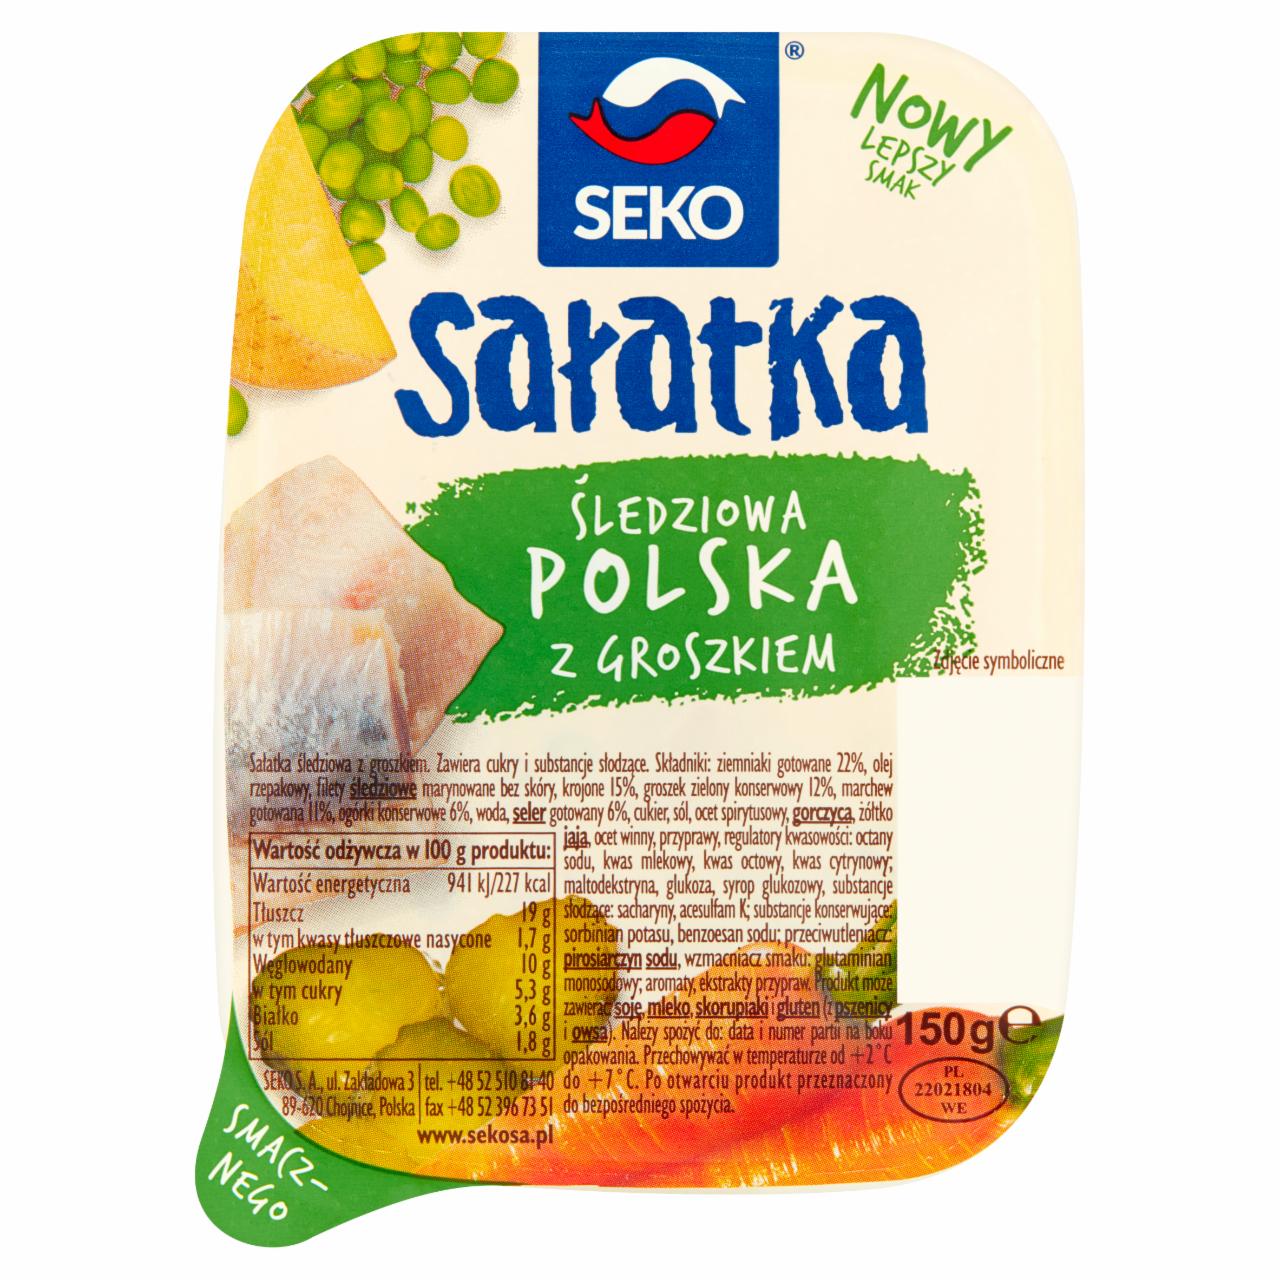 Zdjęcia - Seko Sałatka śledziowa polska z groszkiem 150 g